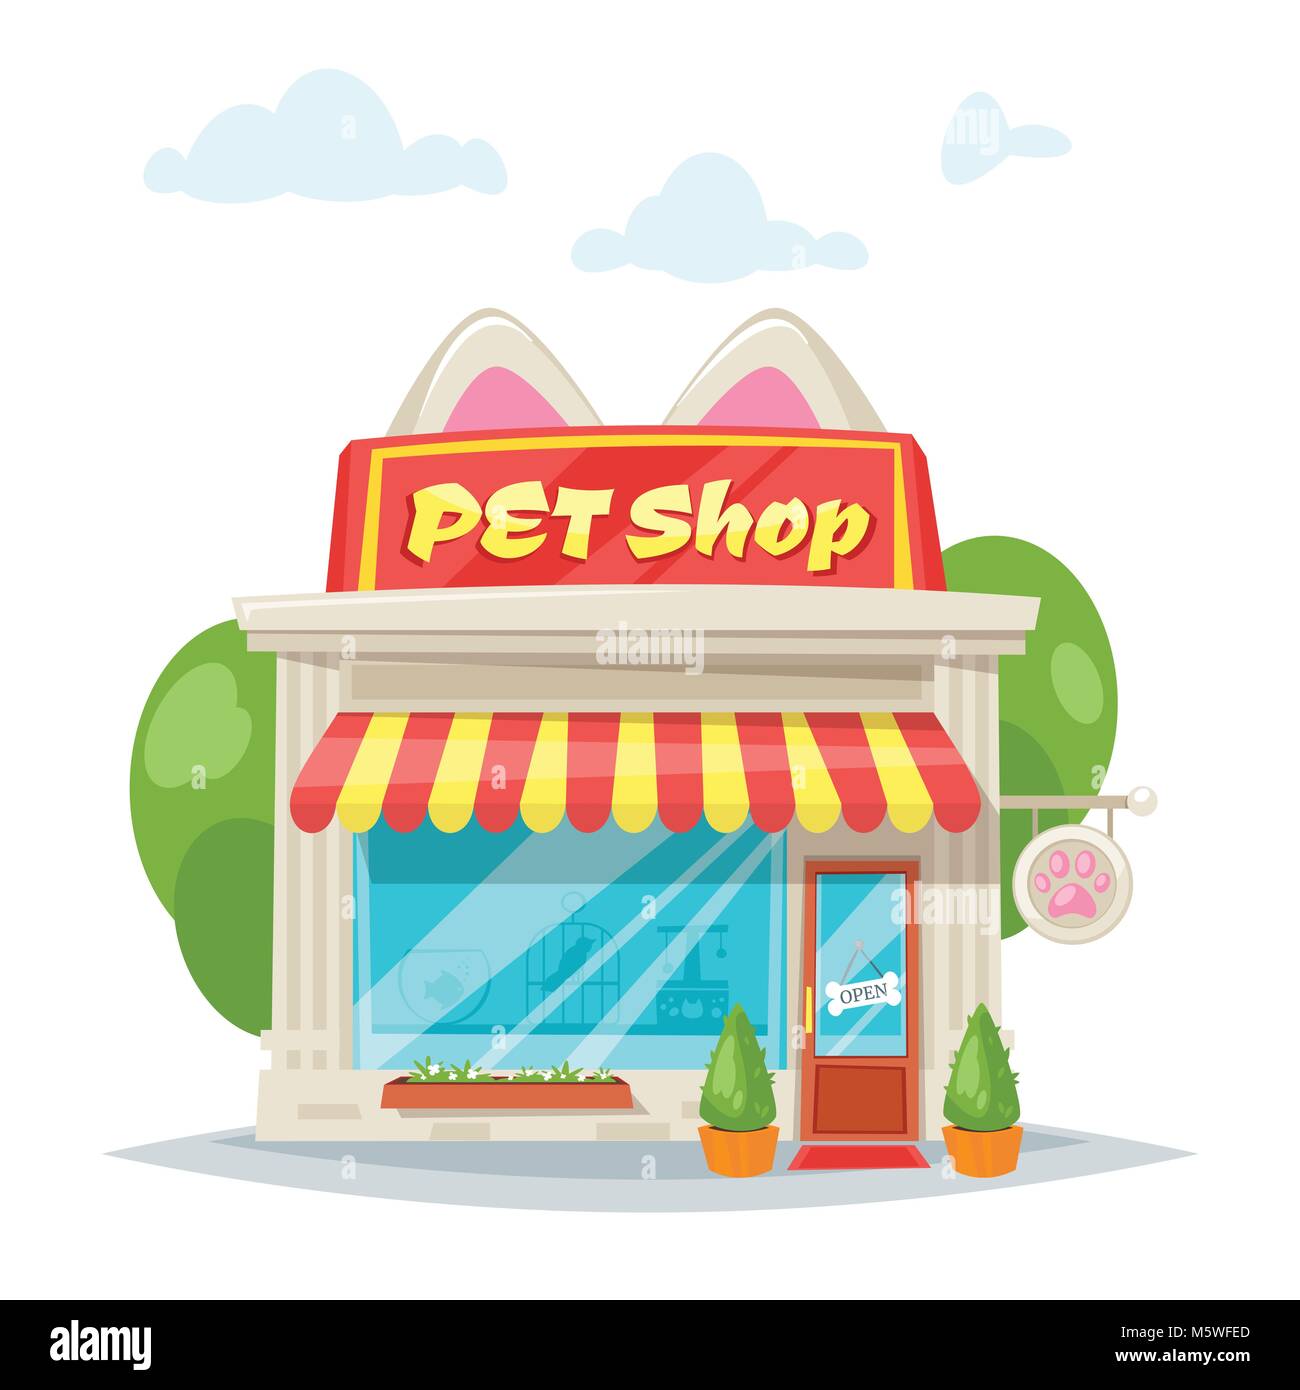 Vector cartoon style illustration de pet shop avec façade bannière lumineuse avec des oreilles de chat. Store extérieur de l'immeuble. Isolé sur fond blanc. Showcase Illustration de Vecteur